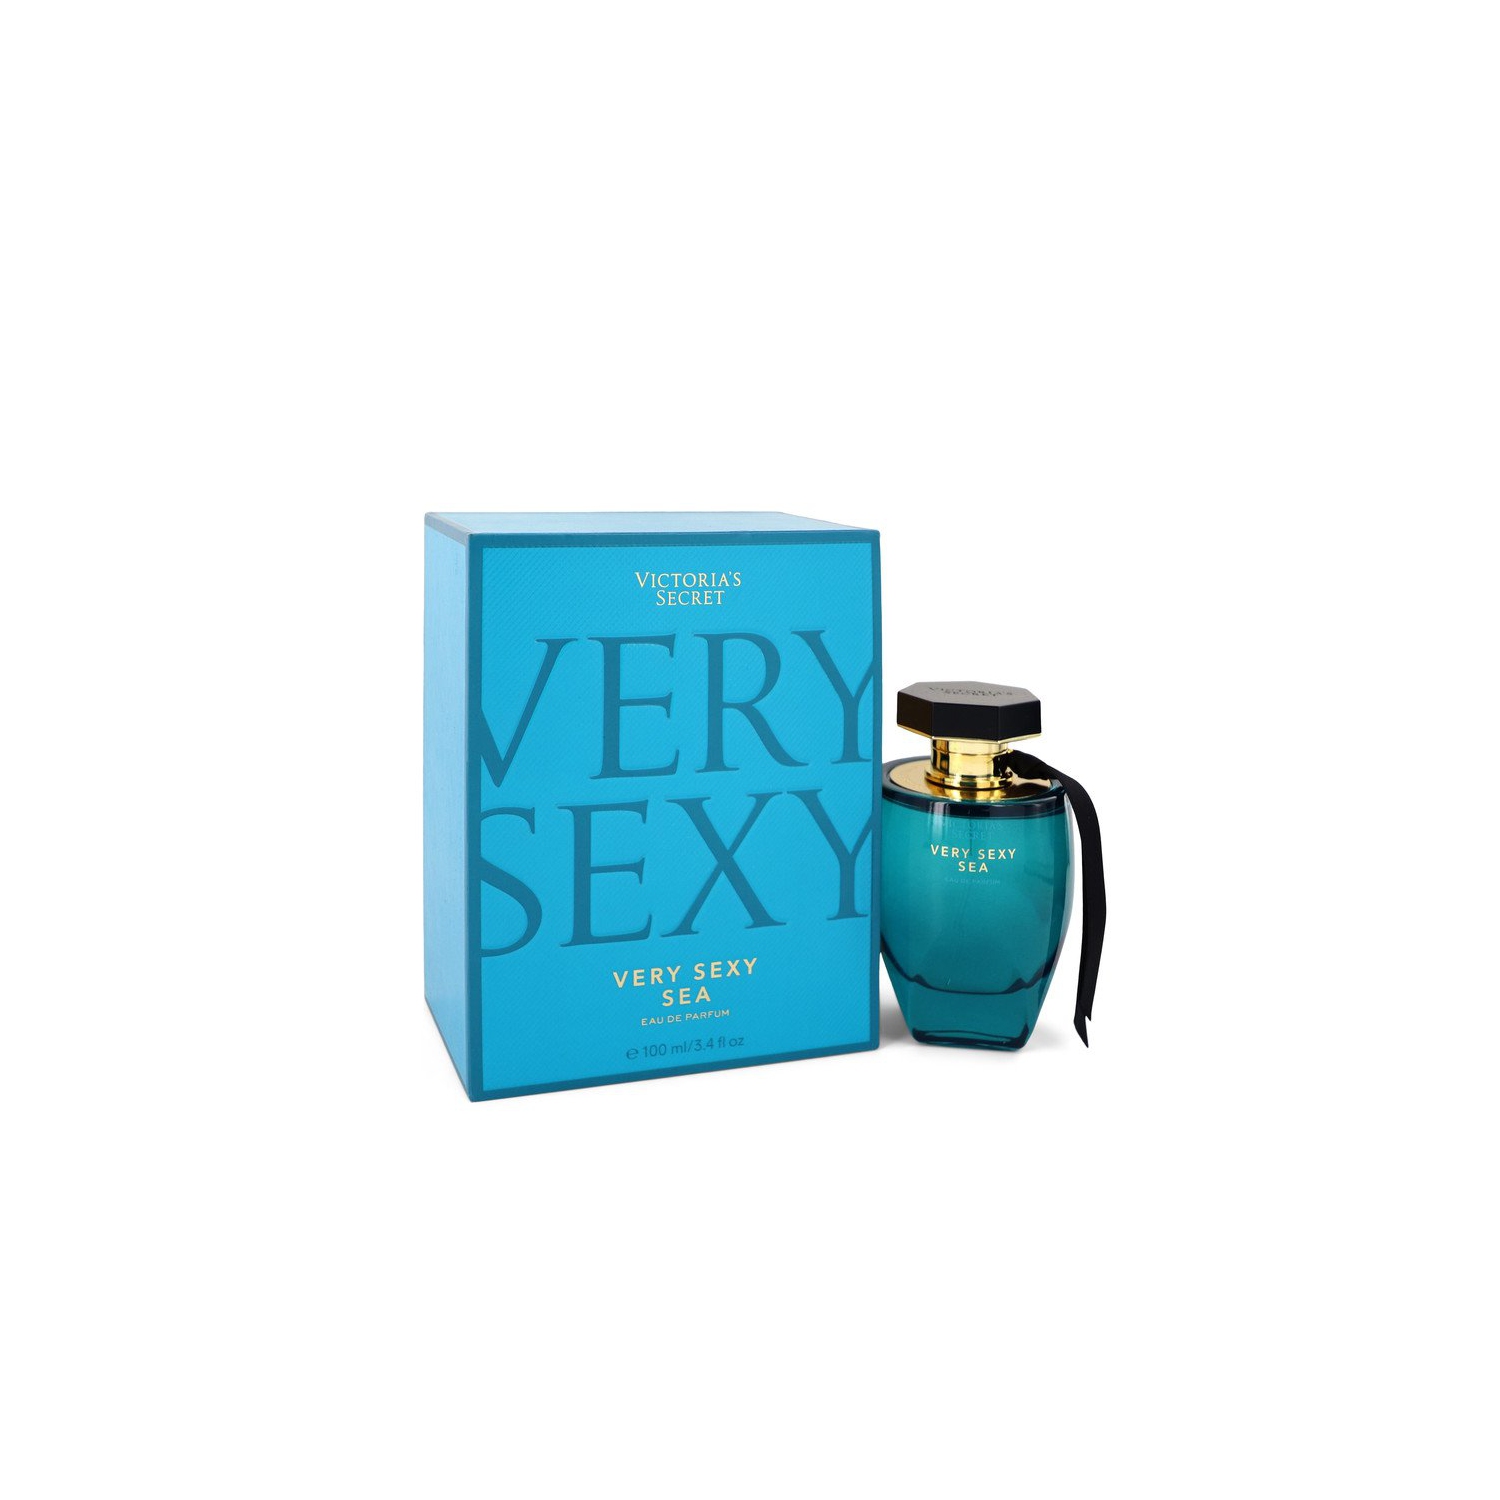 Very Sexy Sea Eau De Parfum Spray By Victoria's Secret